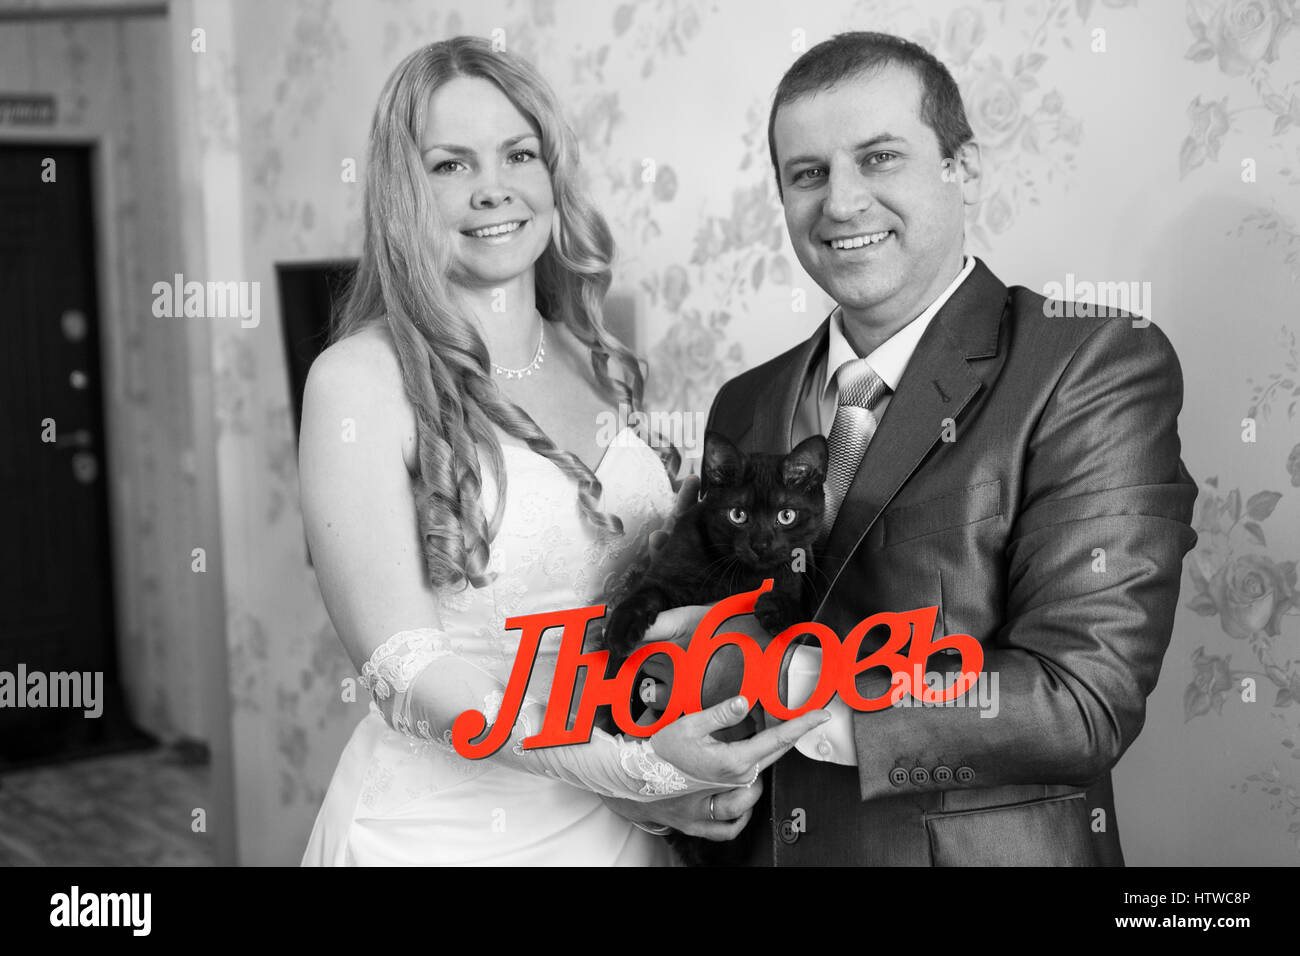 Caucasian sposa e lo sposo con gatto nero e la parola amore in russo in mani. Stanza vuota, inaugurazione della casa nuova. Immagine in bianco e nero Foto Stock